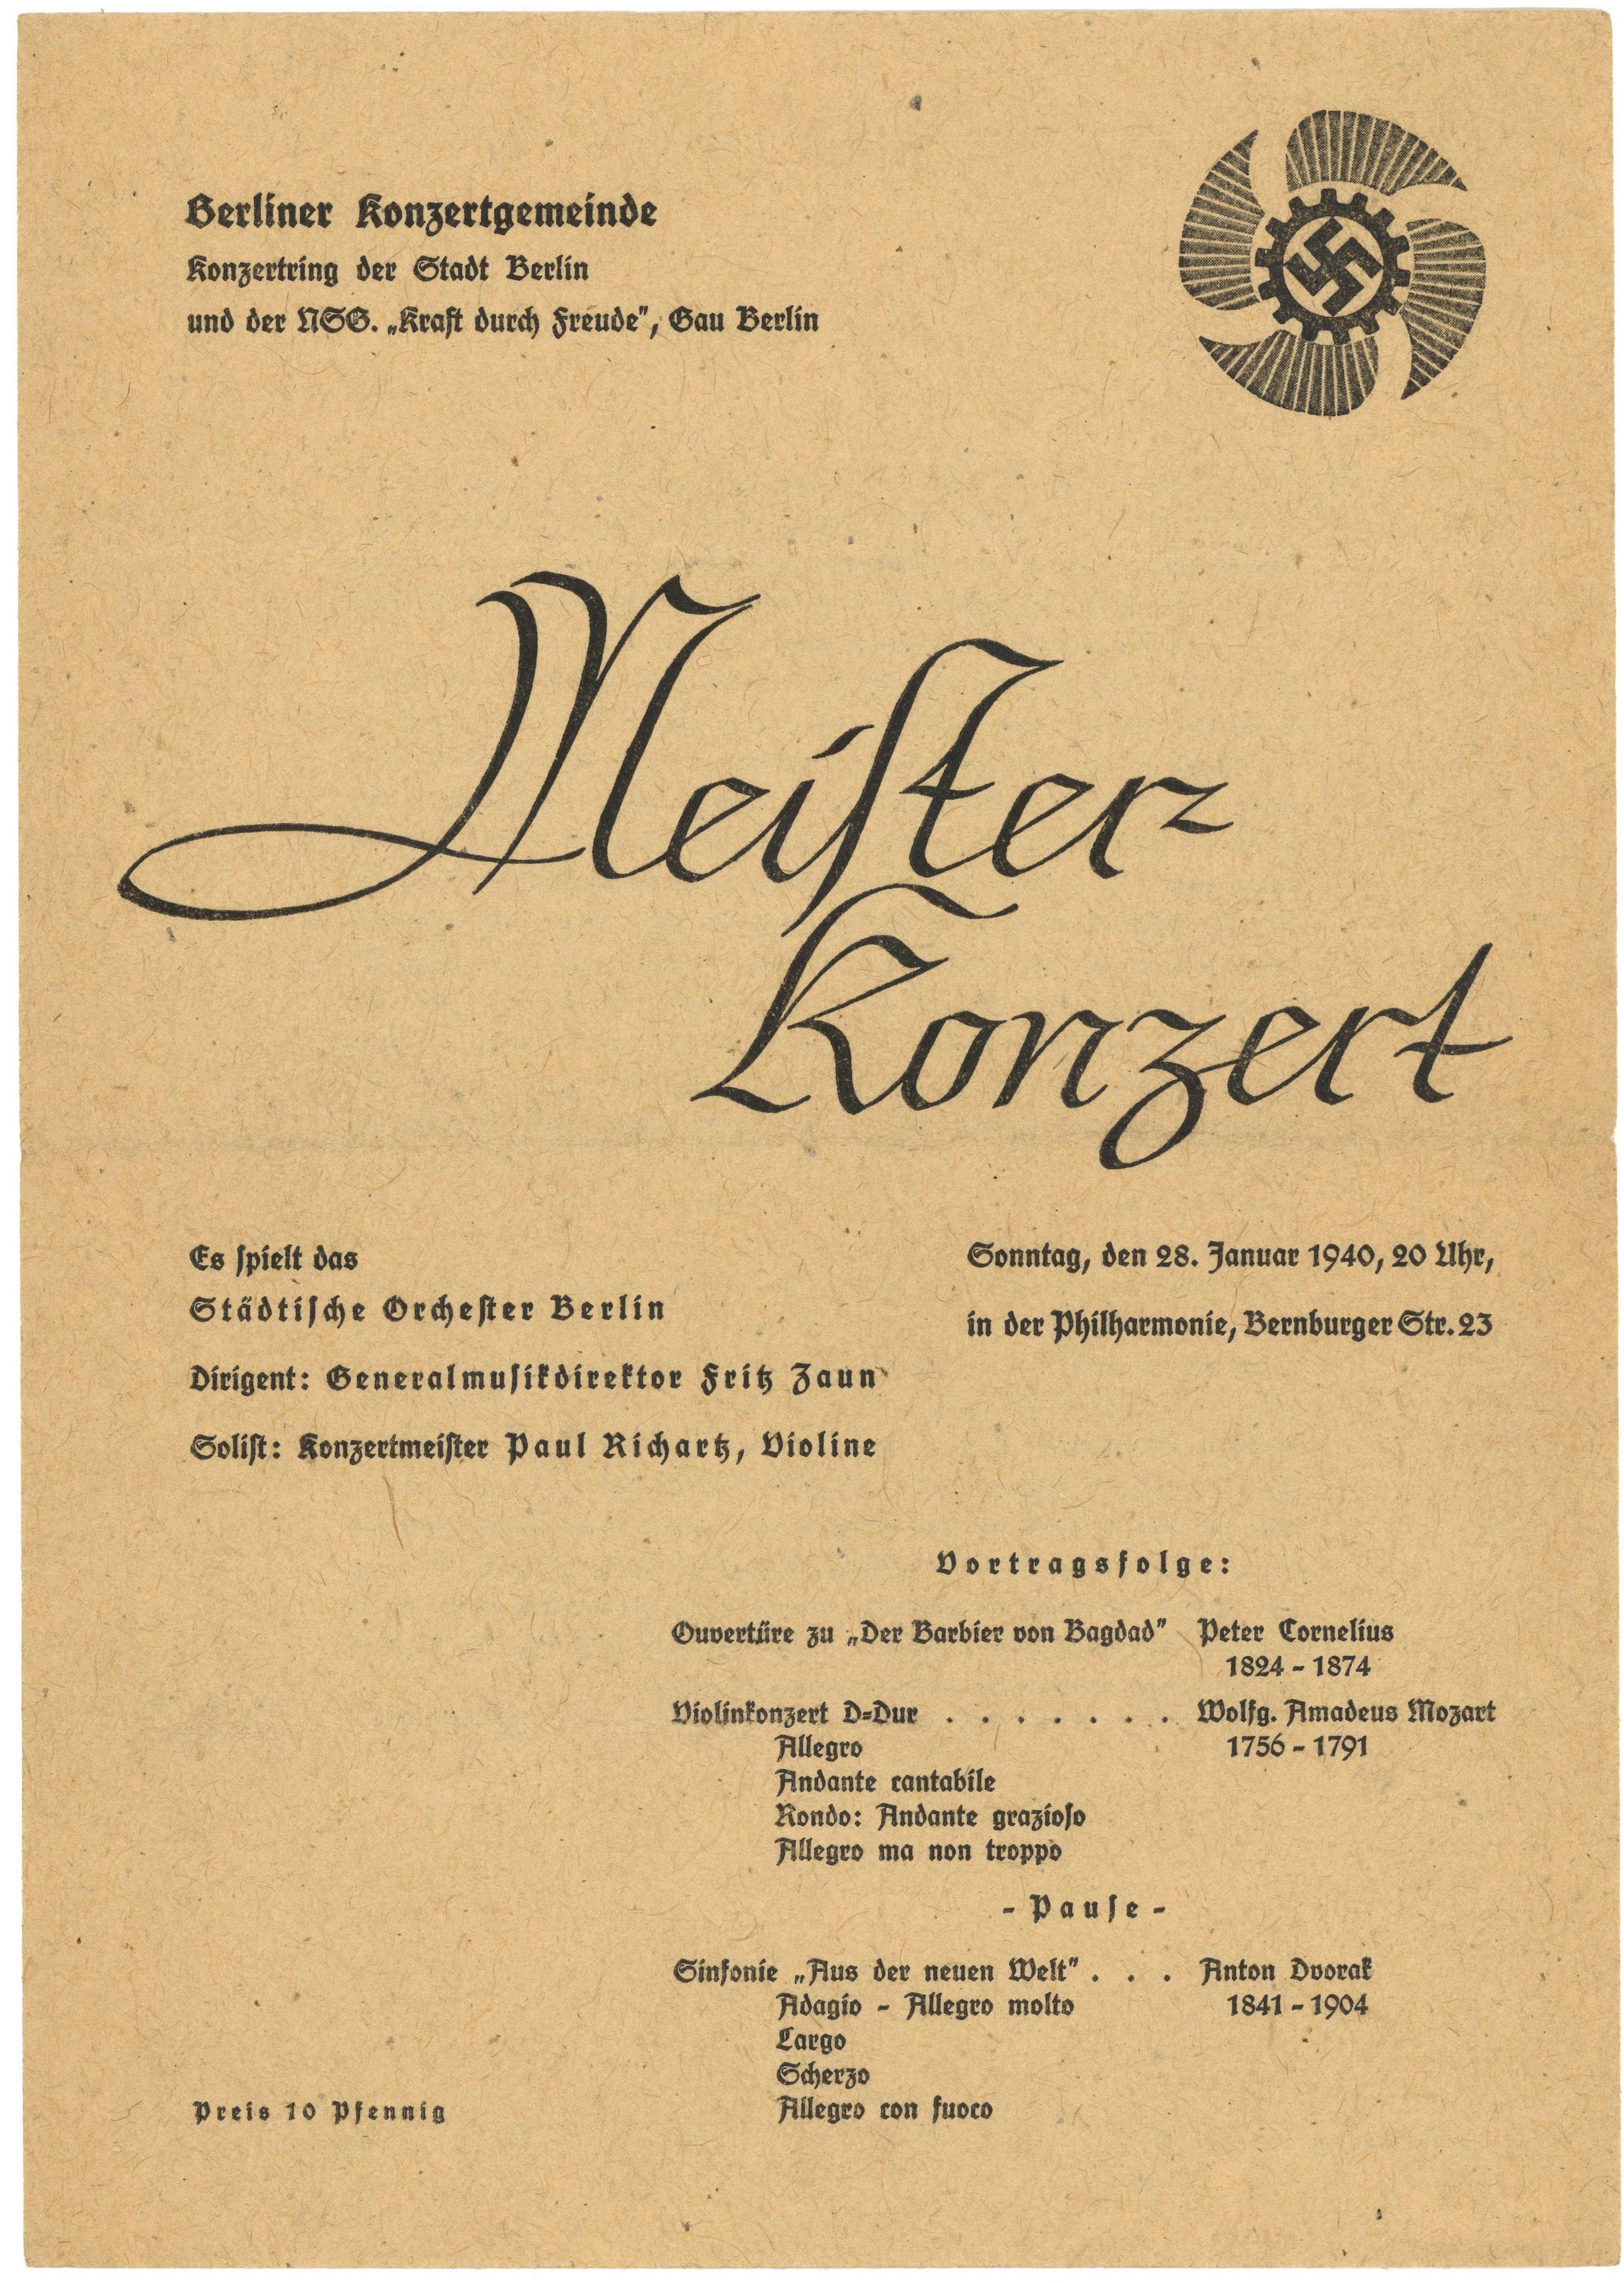 Programm zum "Meister-Konzert" der Berliner Konzertgemeinde in der Philharmonie am 28. Januar 1940 (Landesgeschichtliche Vereinigung für die Mark Brandenburg e.V., Archiv CC BY)